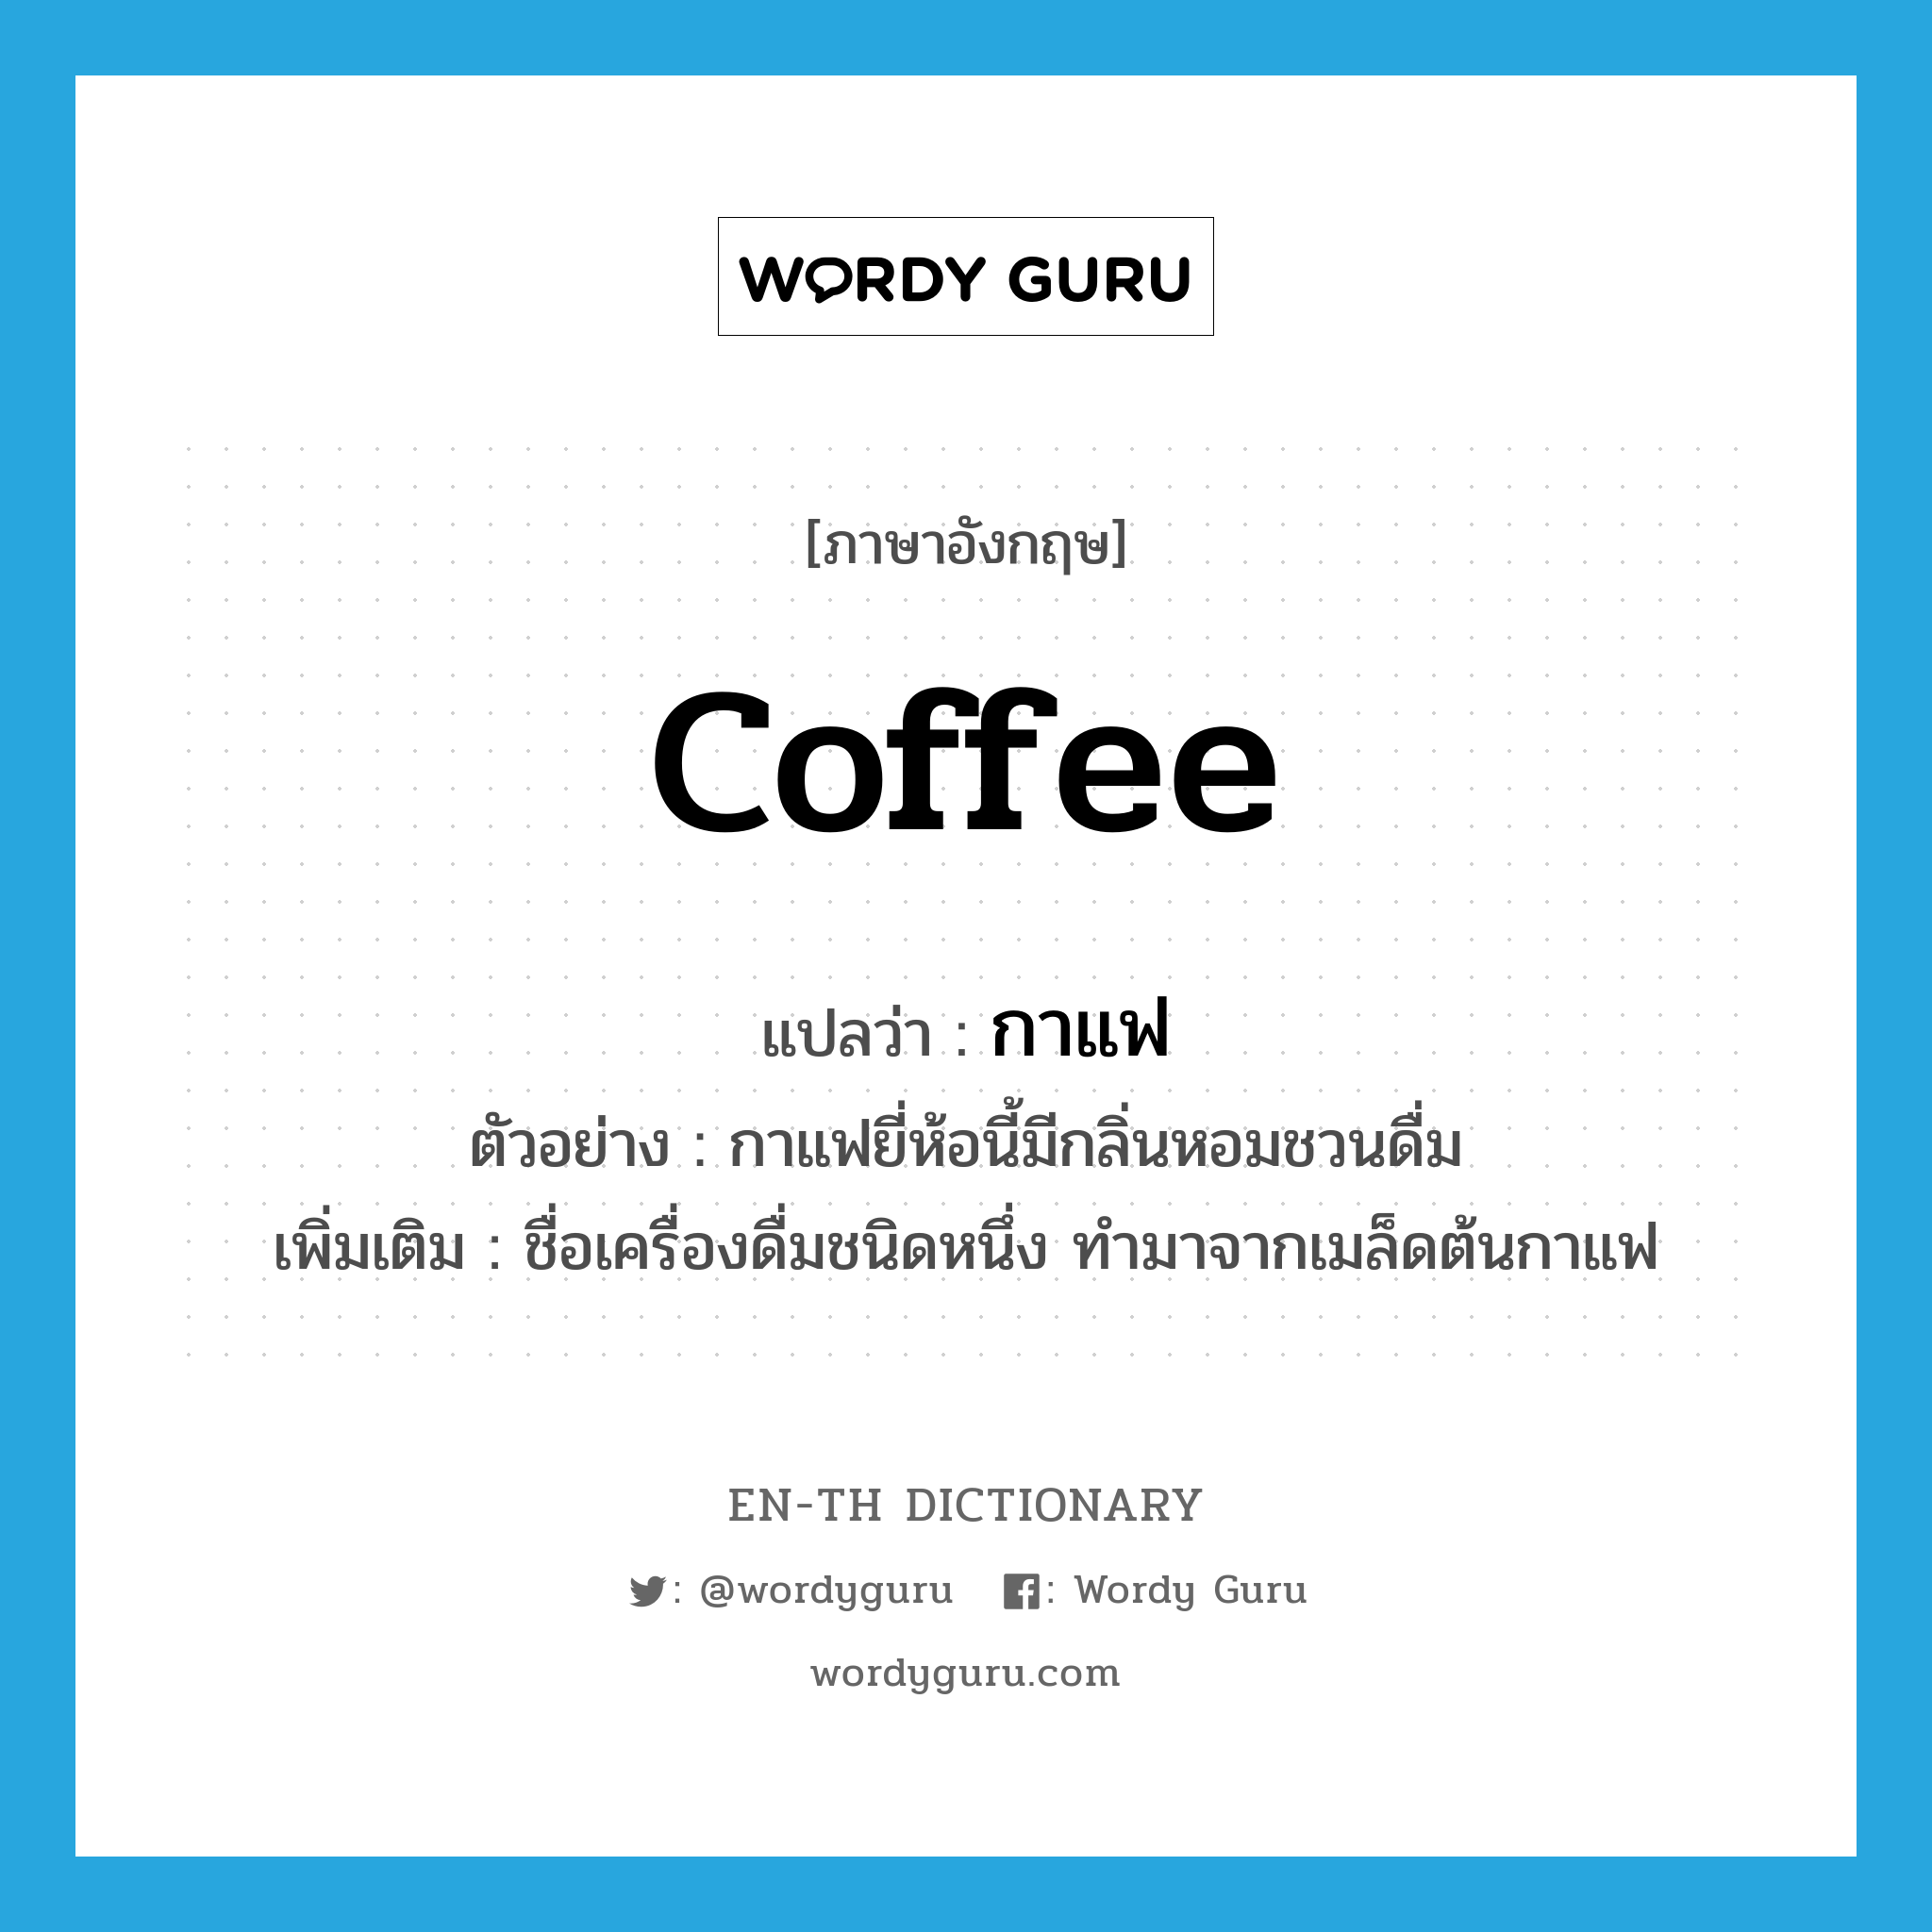 coffee แปลว่า?, คำศัพท์ภาษาอังกฤษ coffee แปลว่า กาแฟ ประเภท N ตัวอย่าง กาแฟยี่ห้อนี้มีกลิ่นหอมชวนดื่ม เพิ่มเติม ชื่อเครื่องดื่มชนิดหนึ่ง ทำมาจากเมล็ดต้นกาแฟ หมวด N